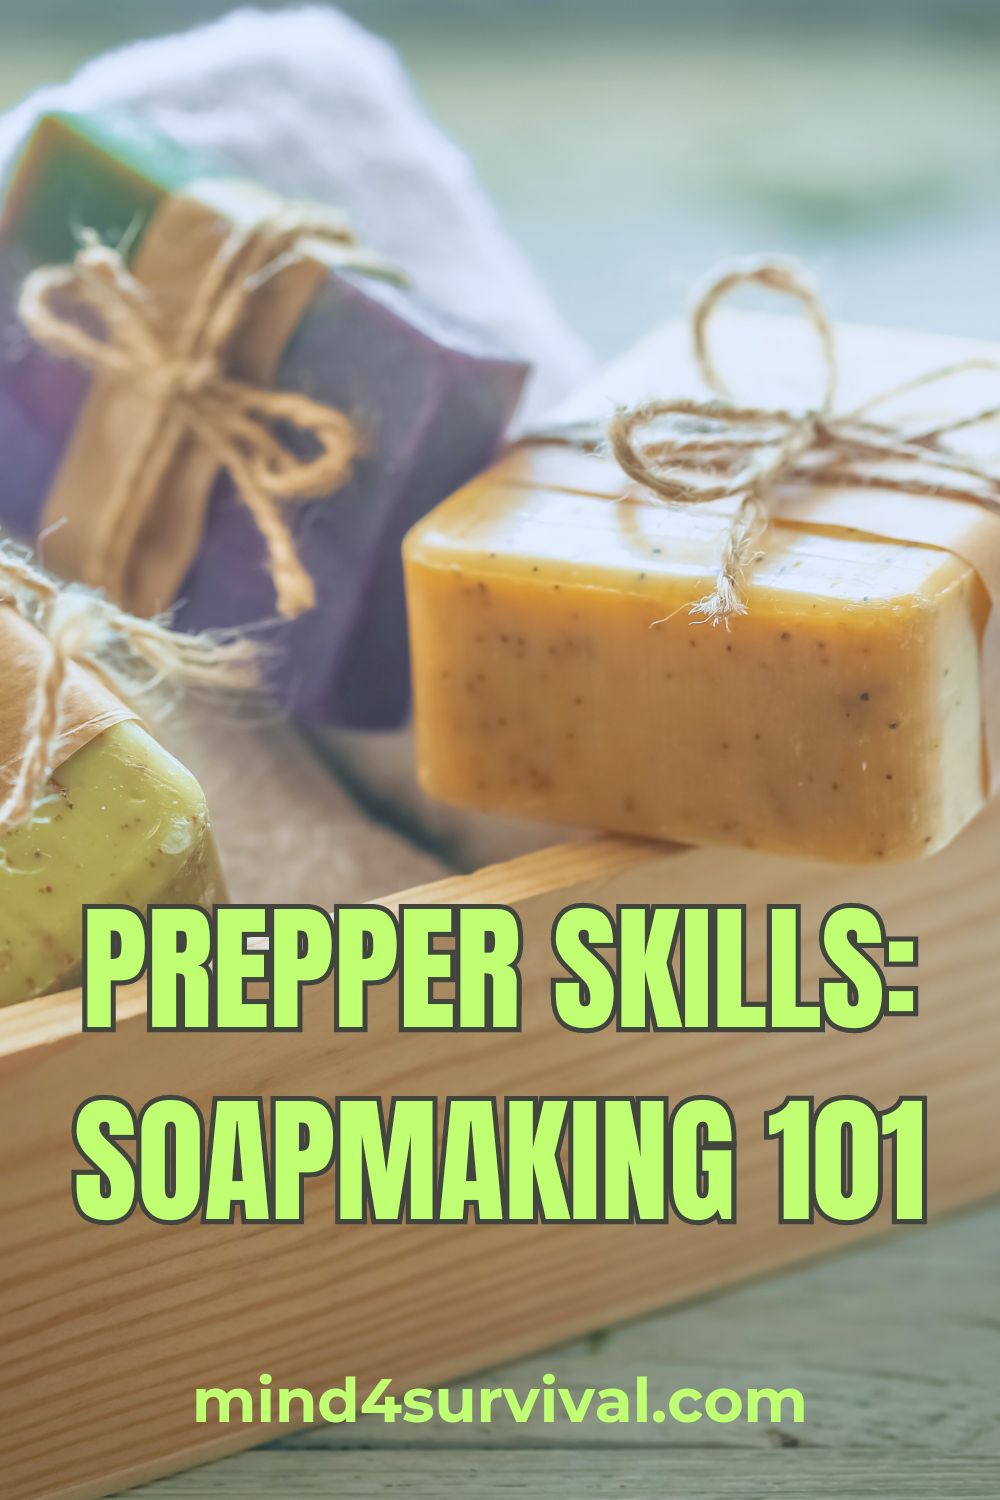 Prepper Skills: Soapmaking 101